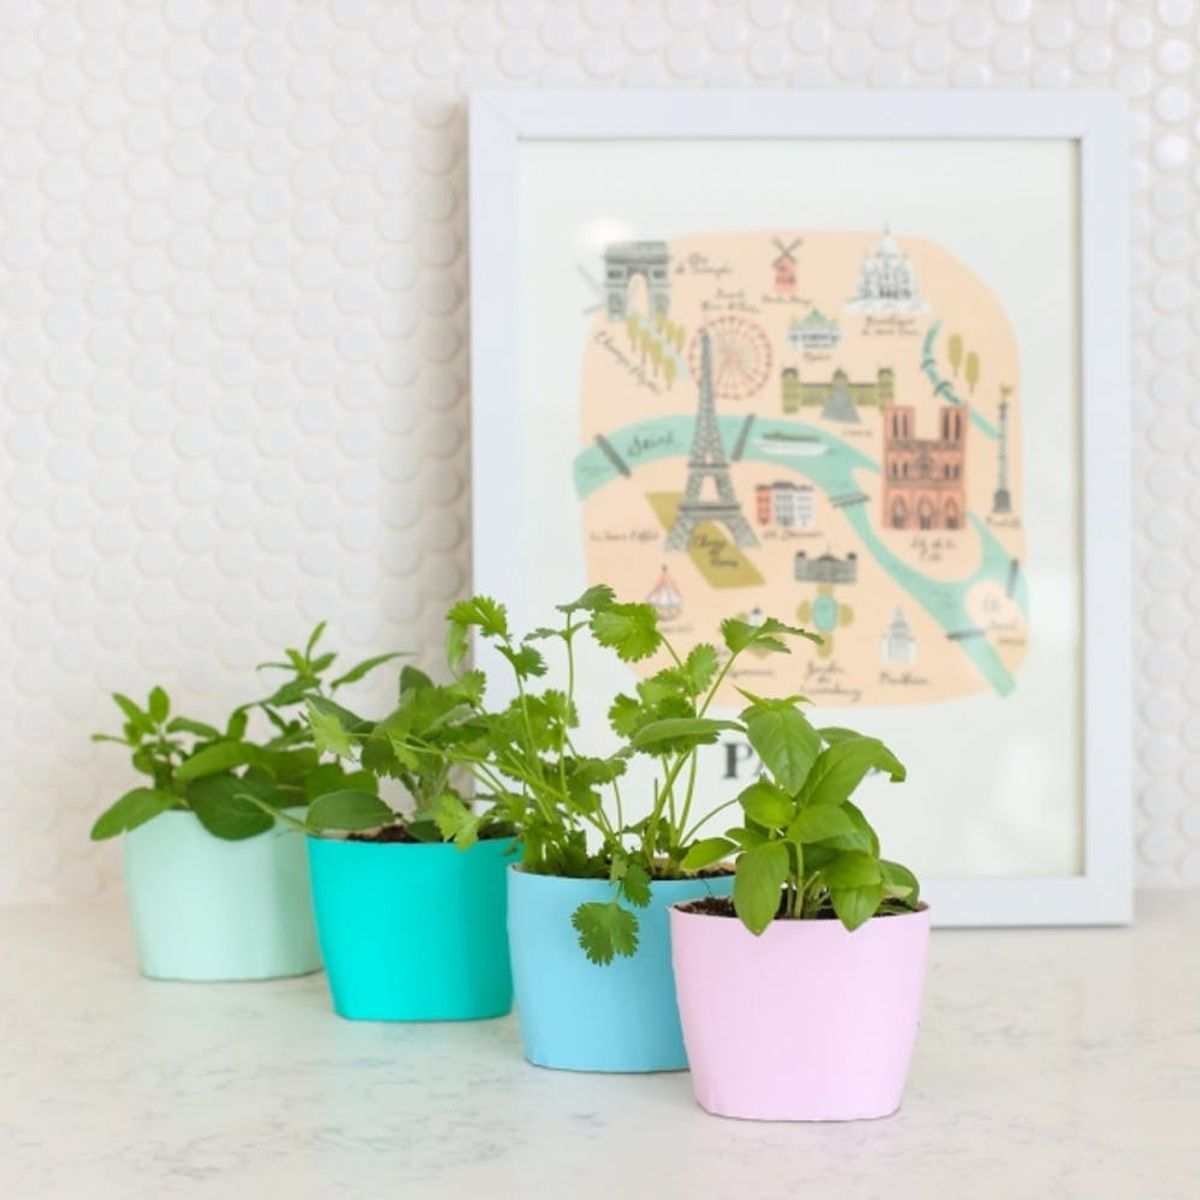 25 Ways to Start an Indoor Herb Garden